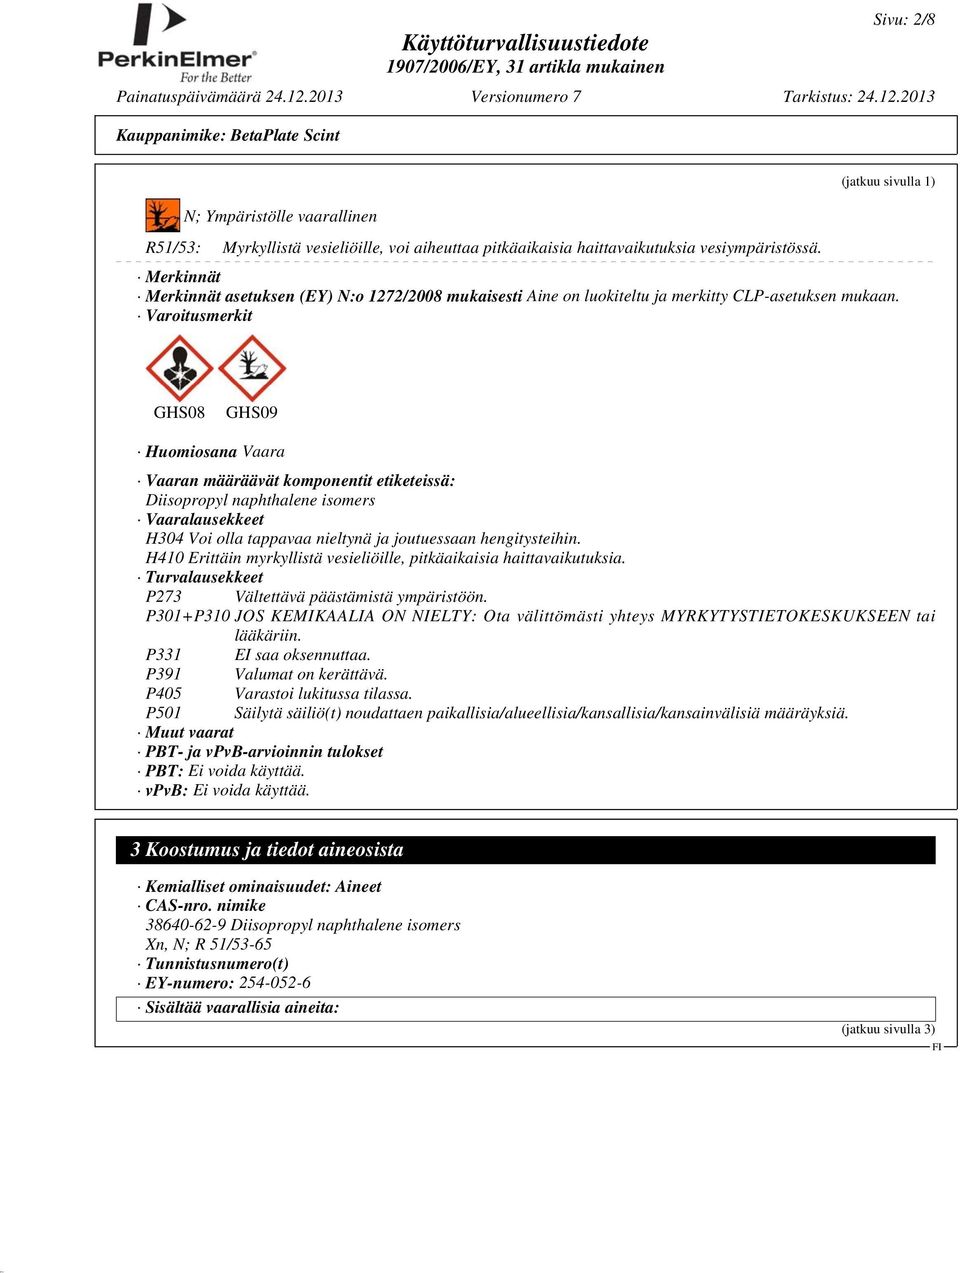 Varoitusmerkit GHS08 GHS09 Huomiosana Vaara Vaaran määräävät komponentit etiketeissä: Diisopropyl naphthalene isomers Vaaralausekkeet H304 Voi olla tappavaa nieltynä ja joutuessaan hengitysteihin.